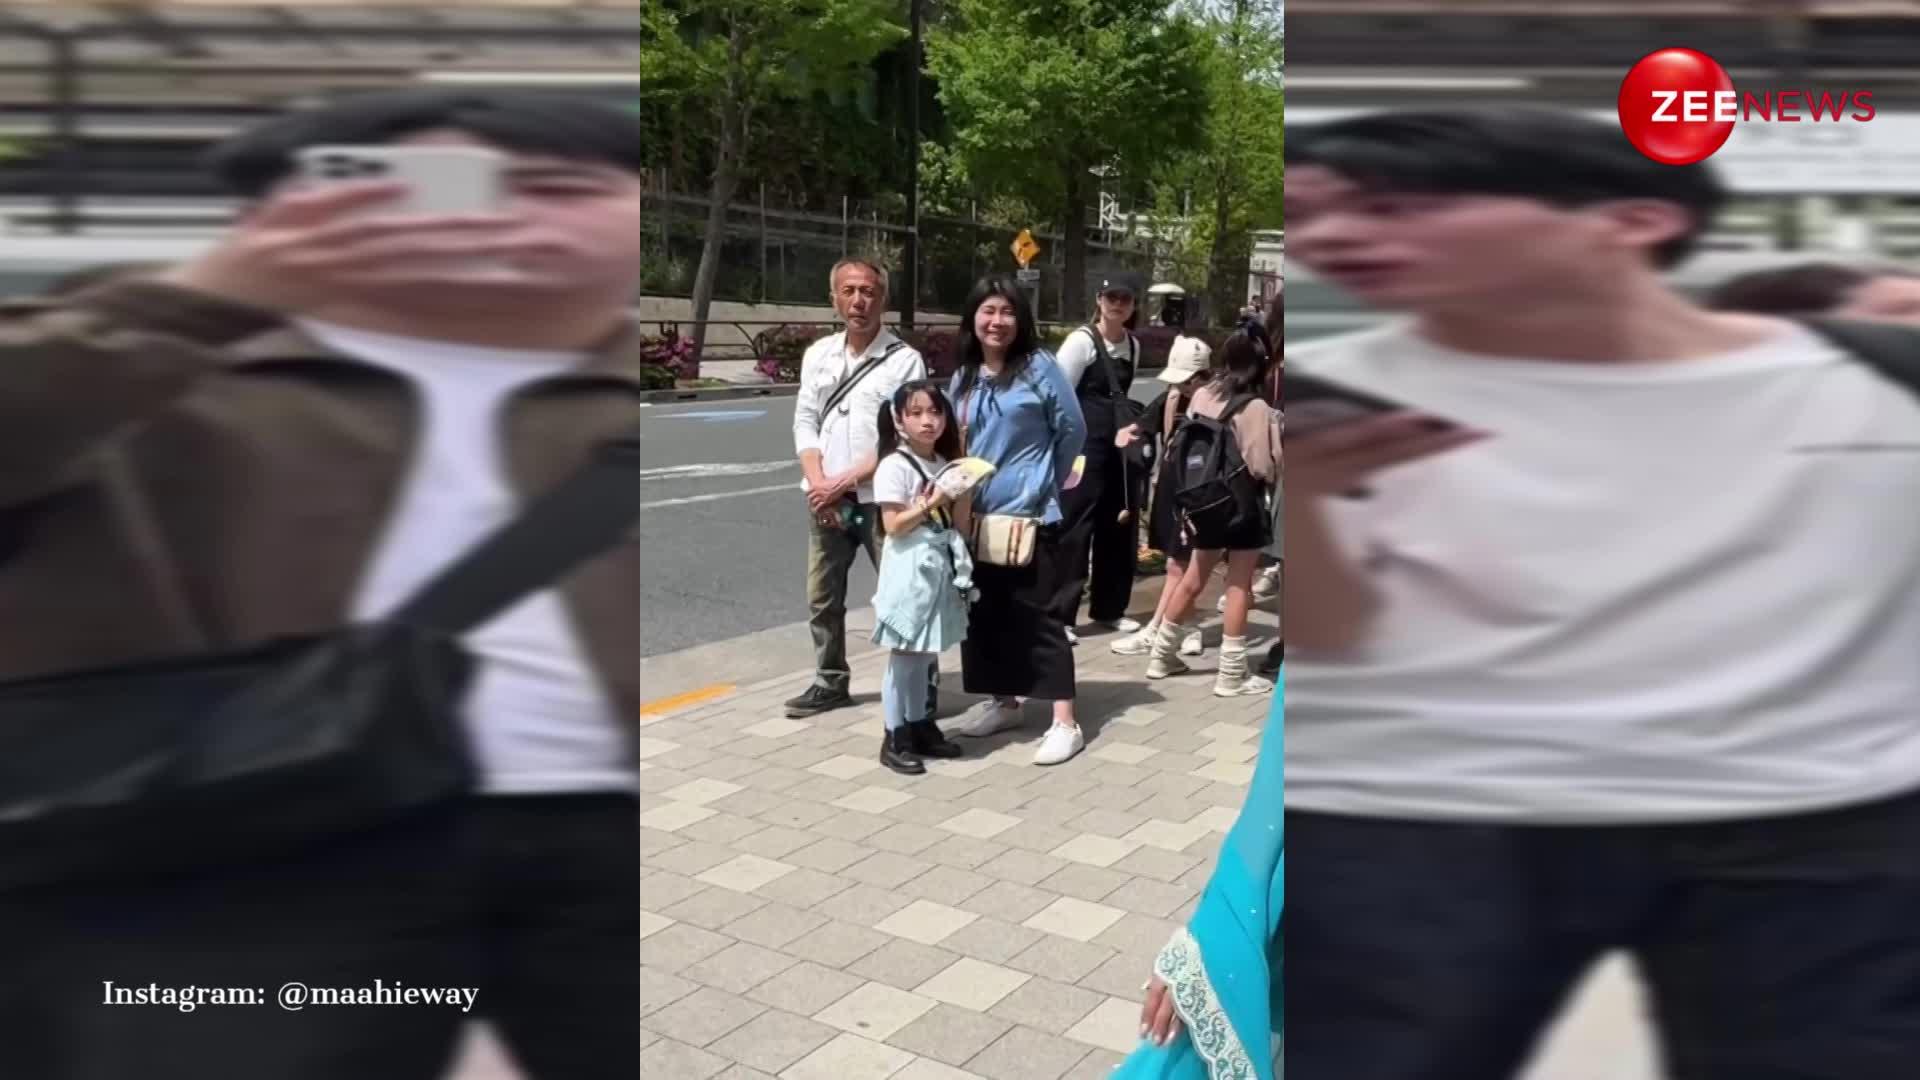 जापान की सड़कों पर साड़ी पहनकर निकली लड़की, देख फोटो और वीडियो लेने लगे लोग; रिएक्शन वायरल